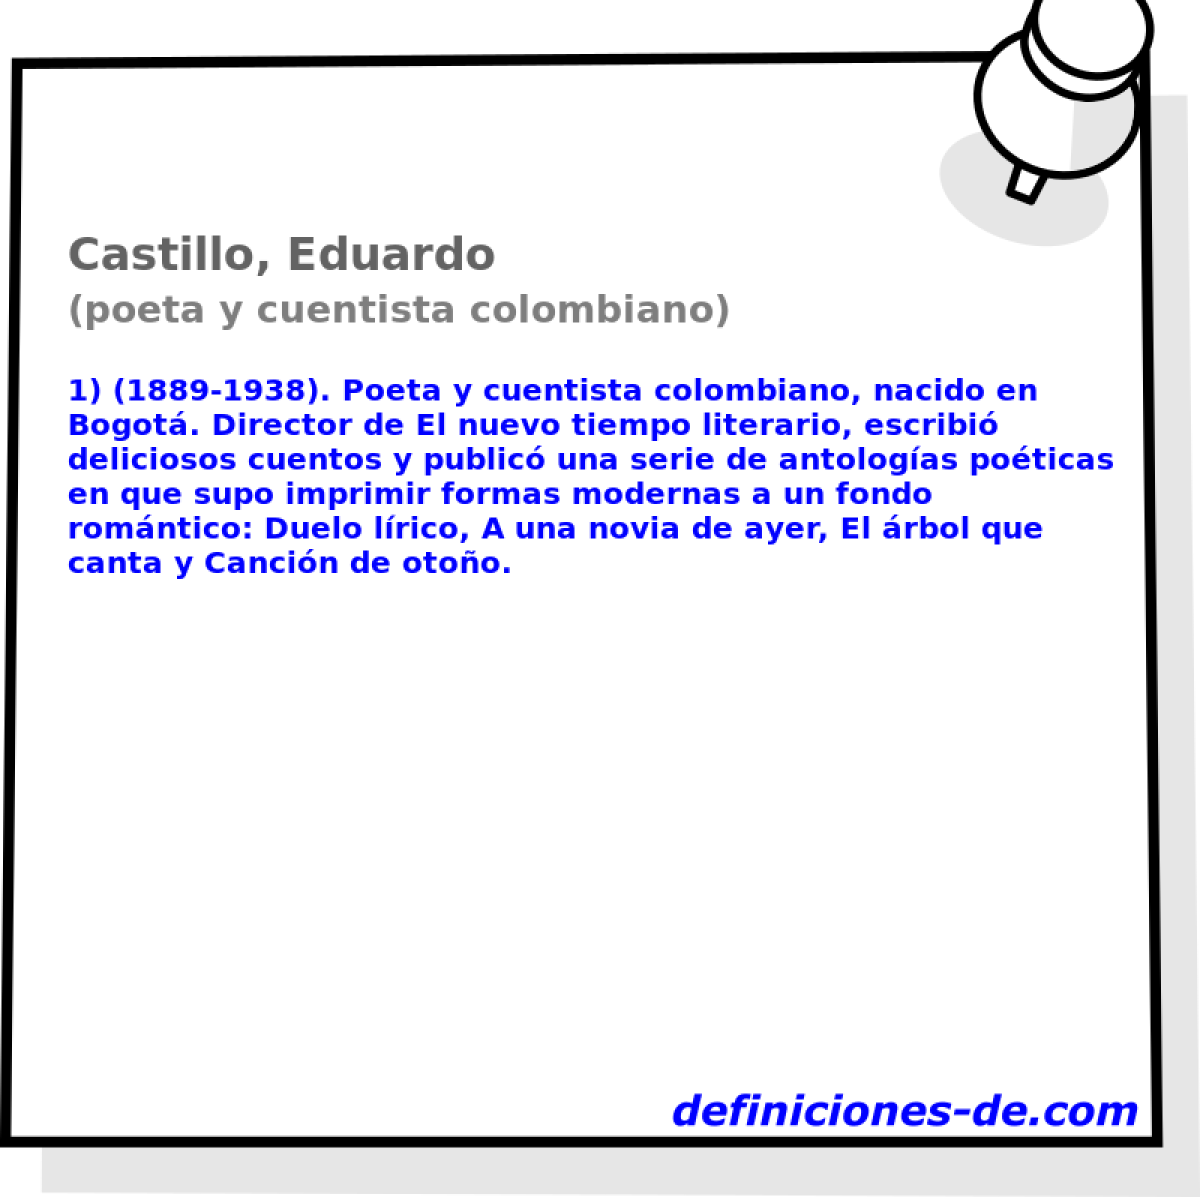 Castillo, Eduardo (poeta y cuentista colombiano)